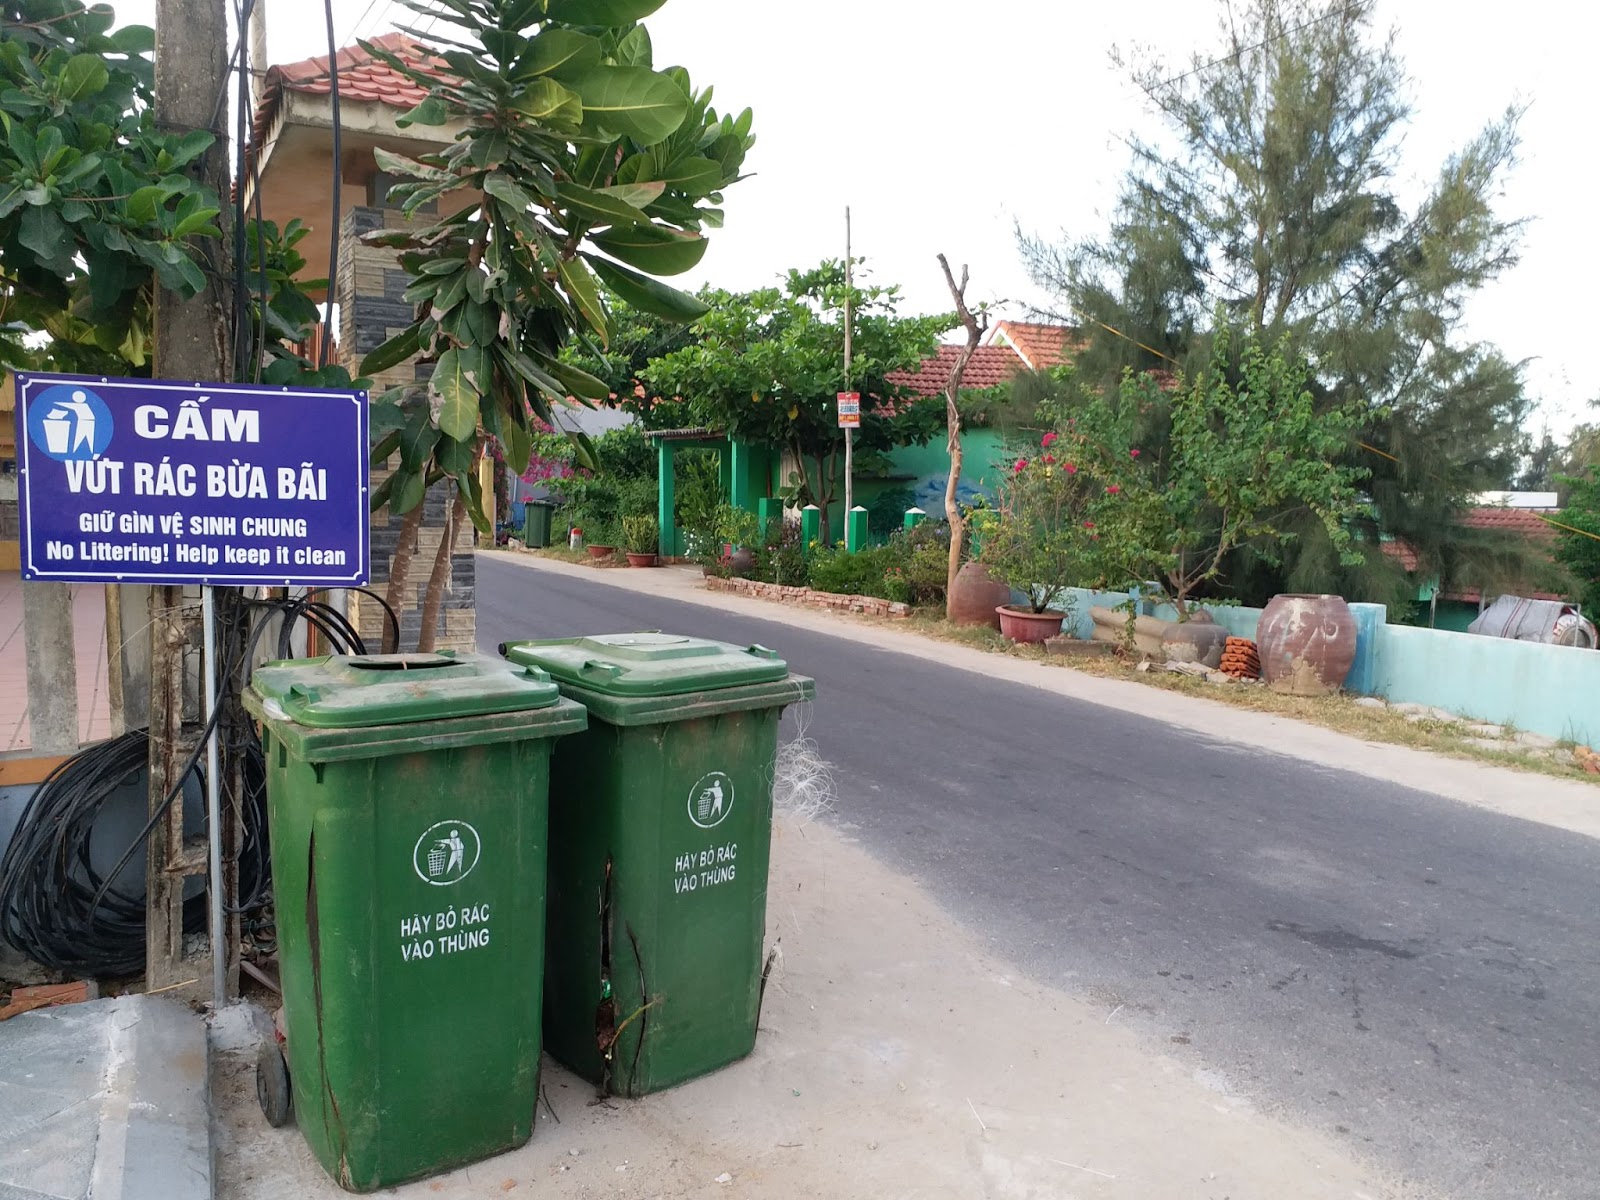 Khéo xử lý rác, làng quê sạch đẹp 'níu chân' khách du lịch - 15